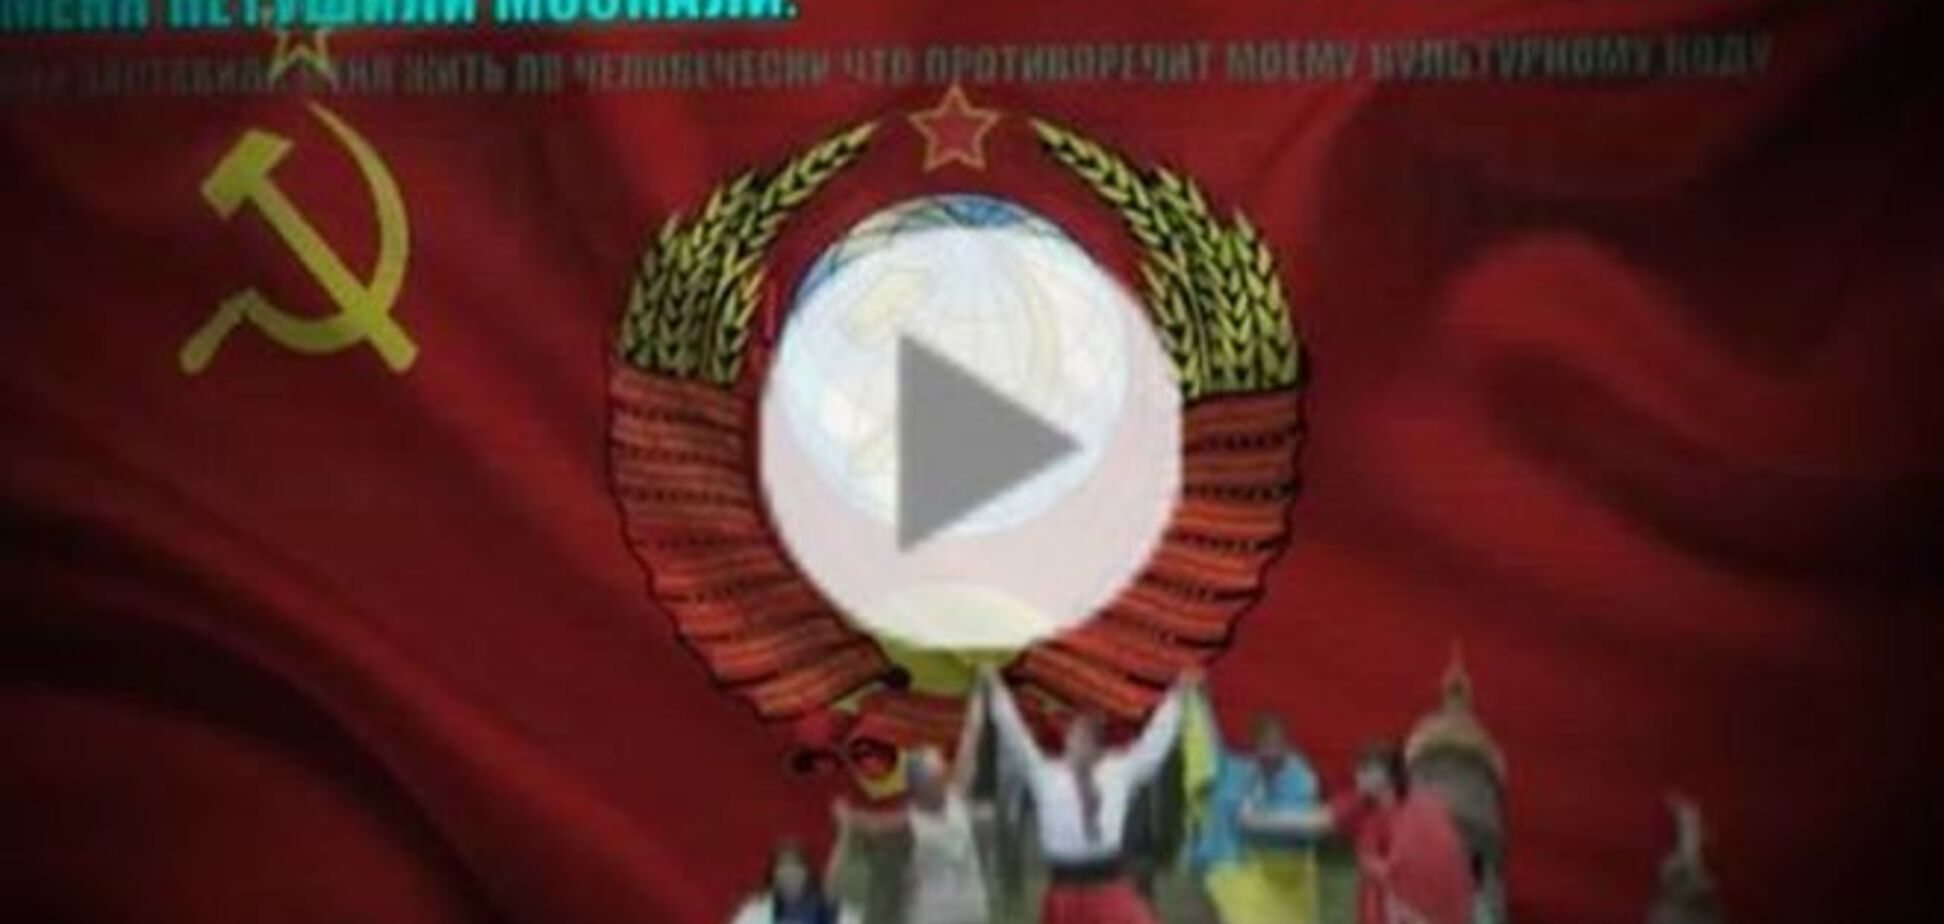 Хакеры выставили на сайте Тернопольского горсовета герб СССР. Фотофакт